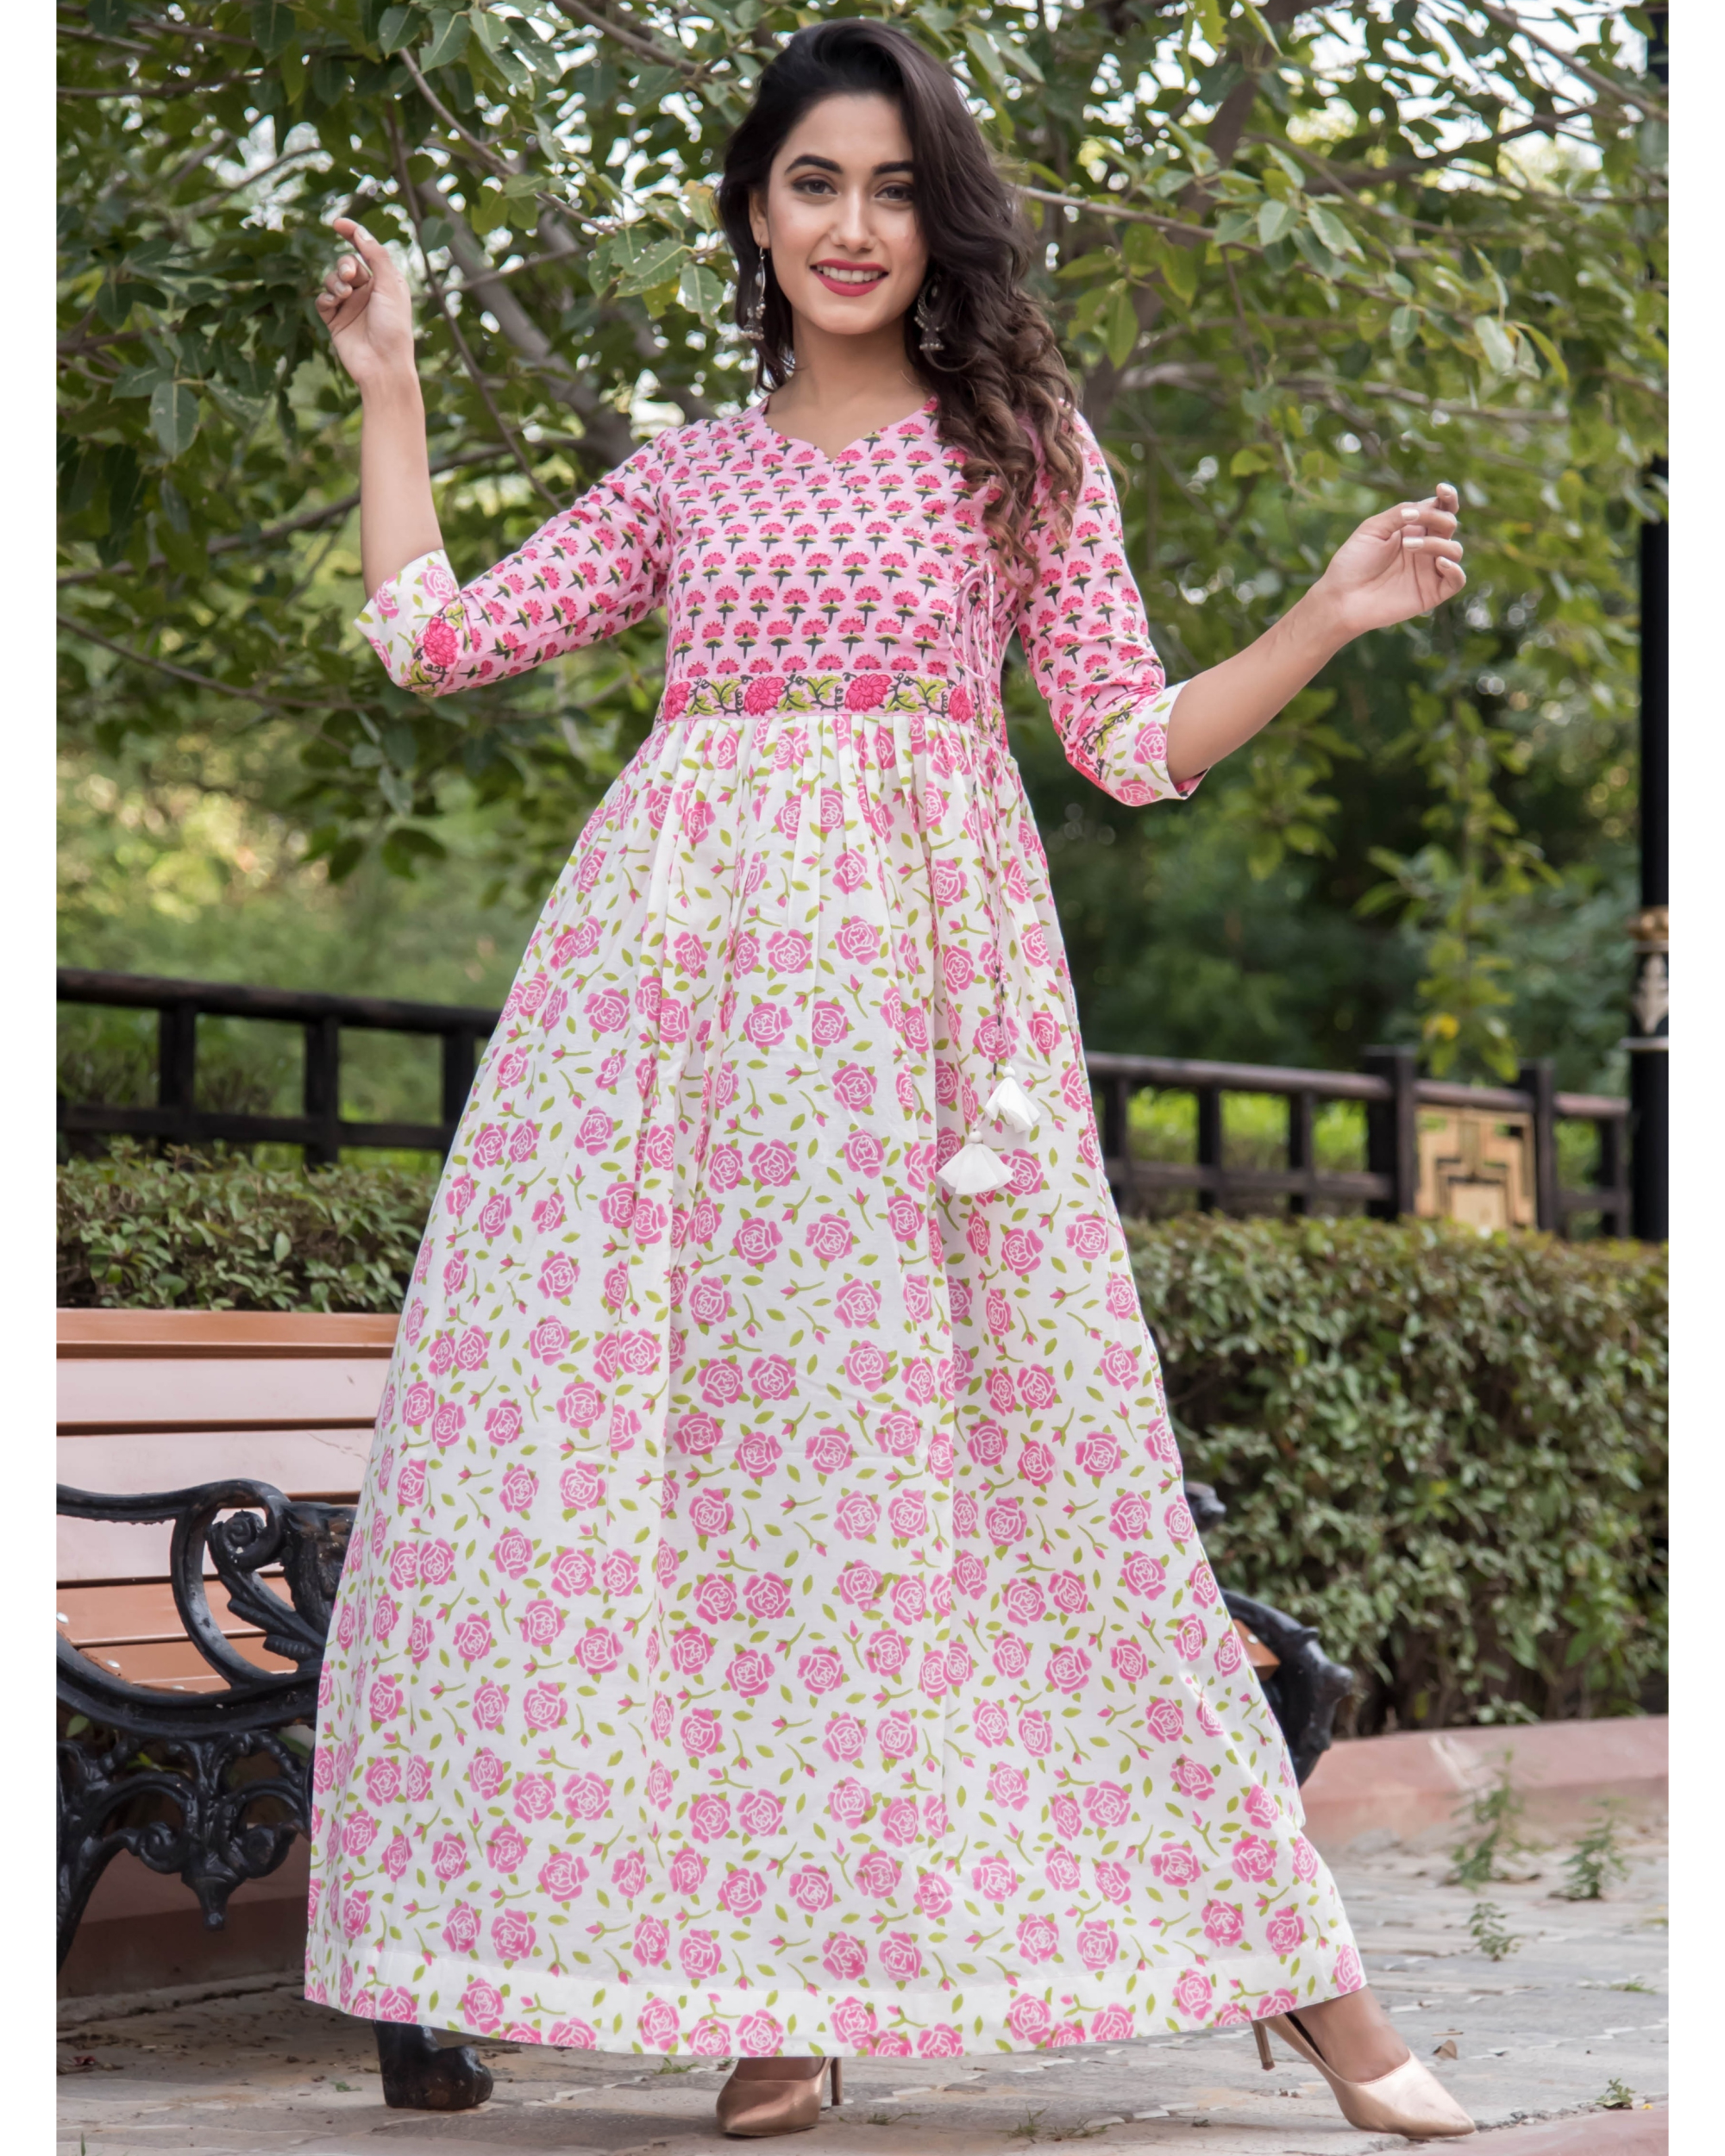 Dual print floral pink dress by Kaaj | The Secret Label